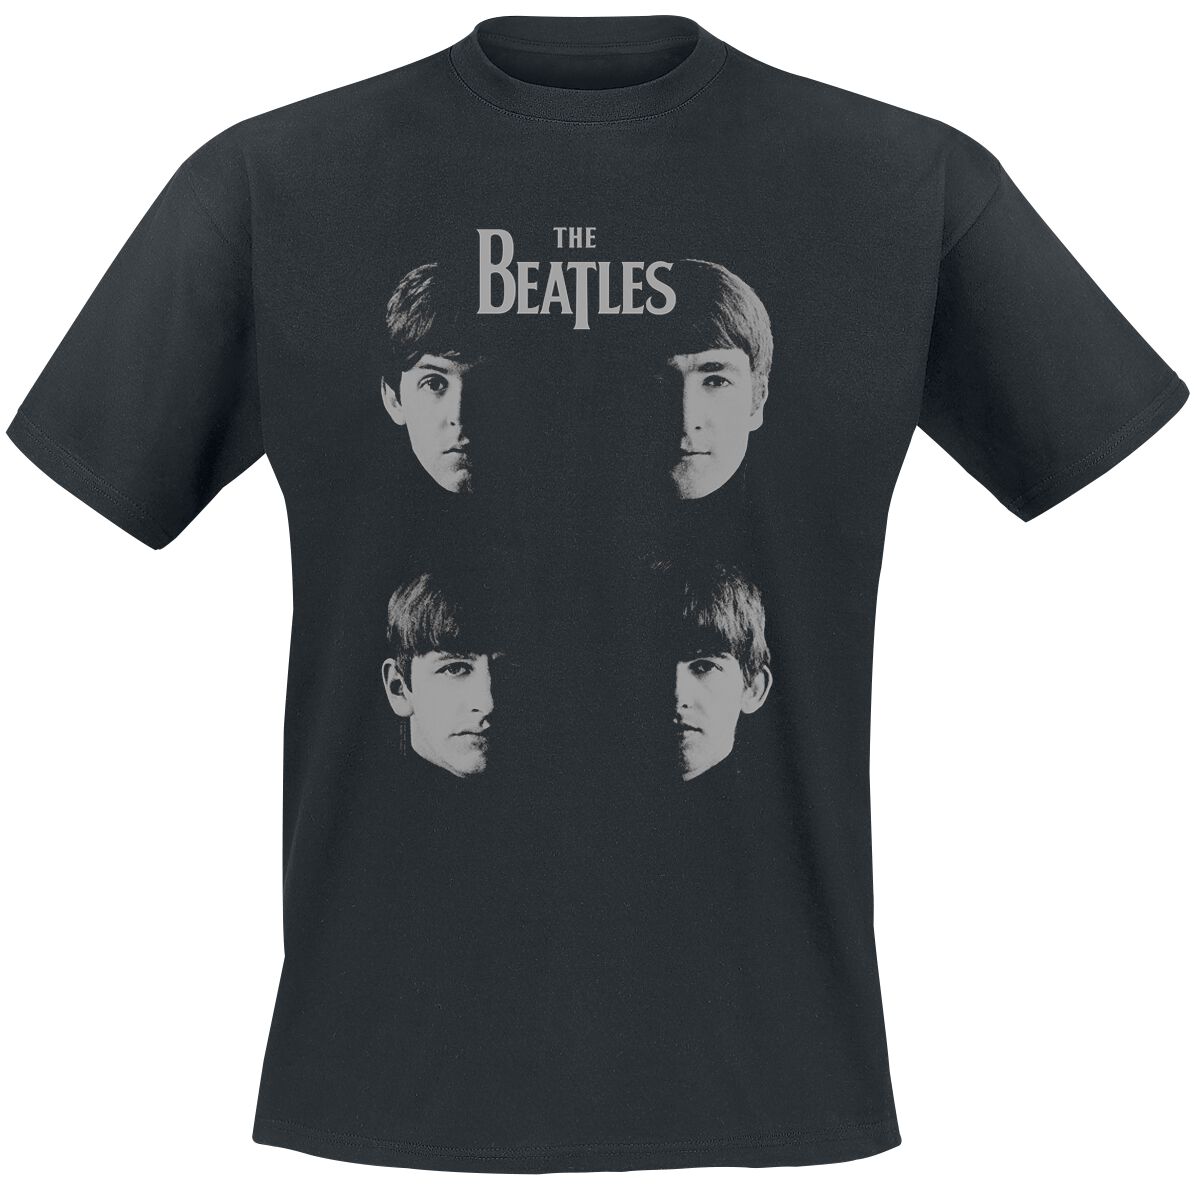 The Beatles T-Shirt - Shadow Faces - S bis 3XL - für Männer - Größe S - schwarz  - Lizenziertes Merchandise!